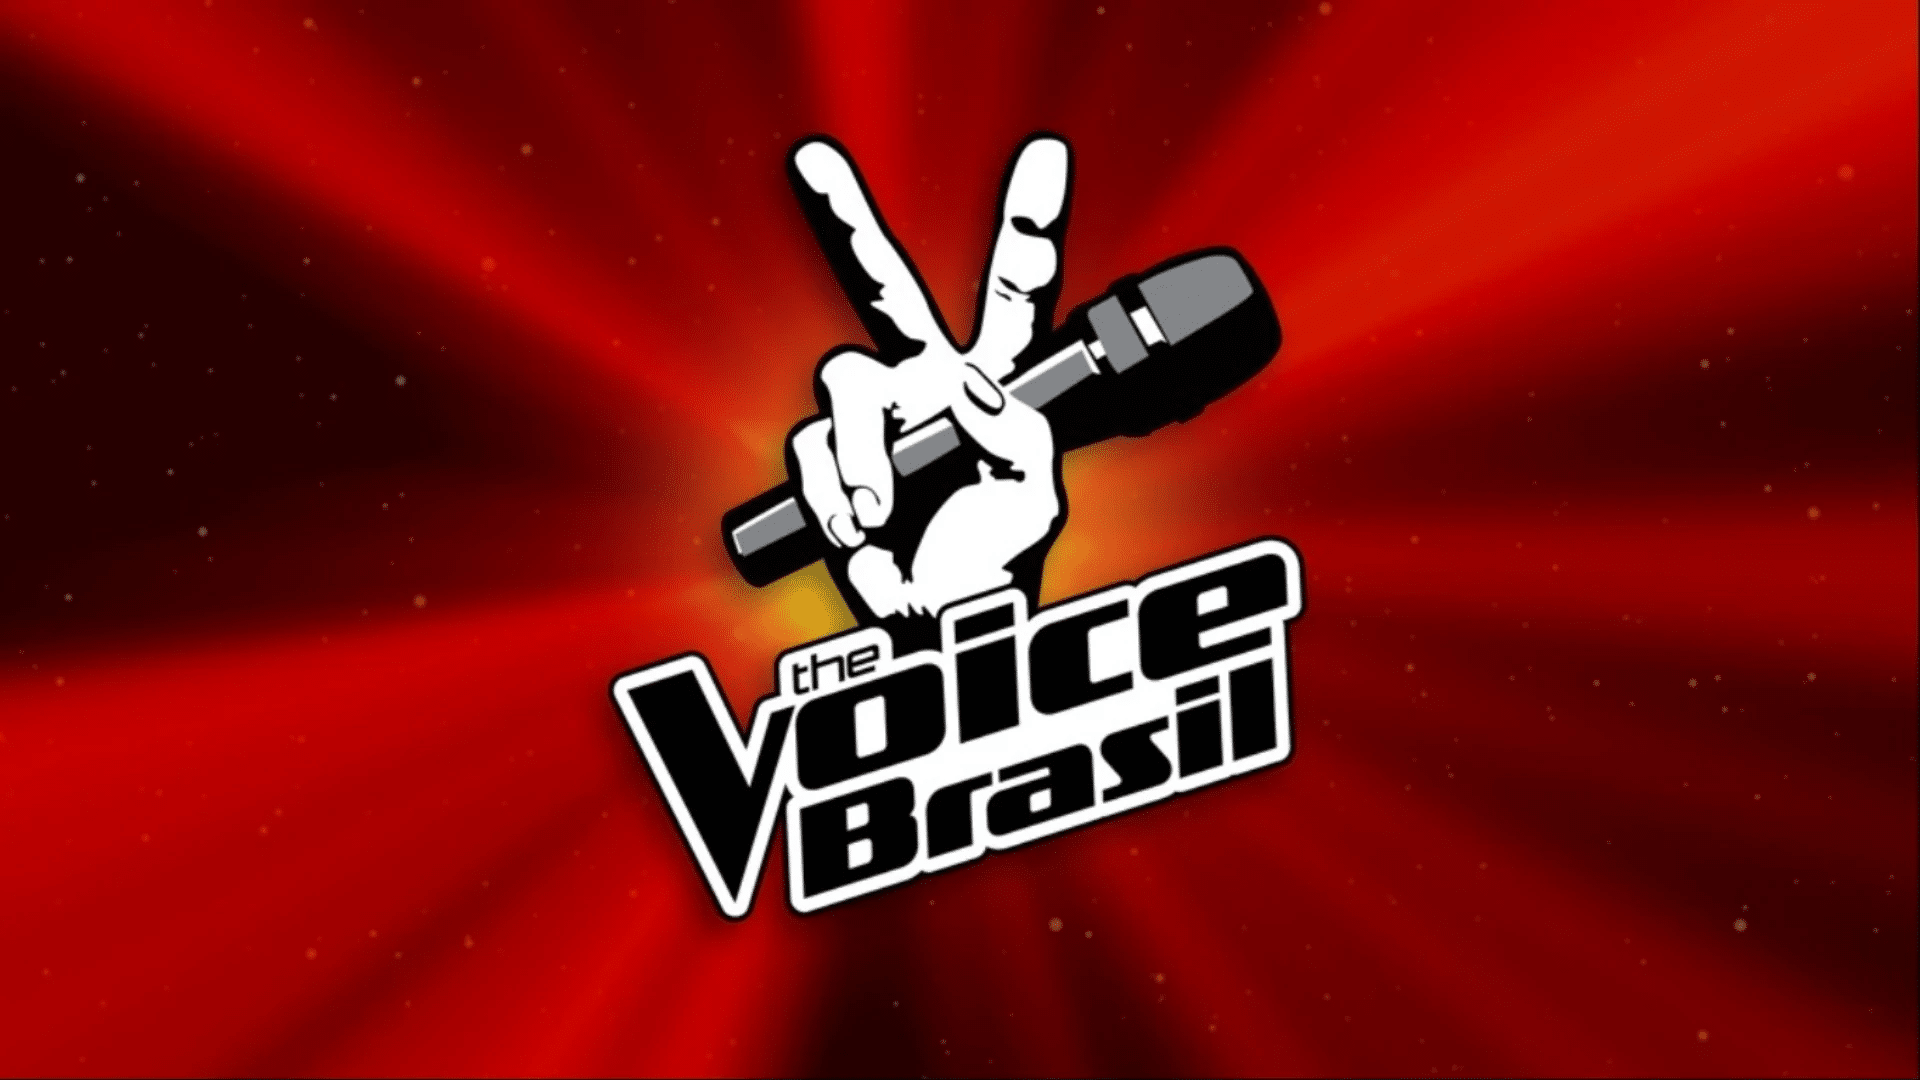 Эскиз заставки для телепередачи. Голос. Шоу голос лого. Логотип the Voice Brasil. Телевизионные заставки передач.